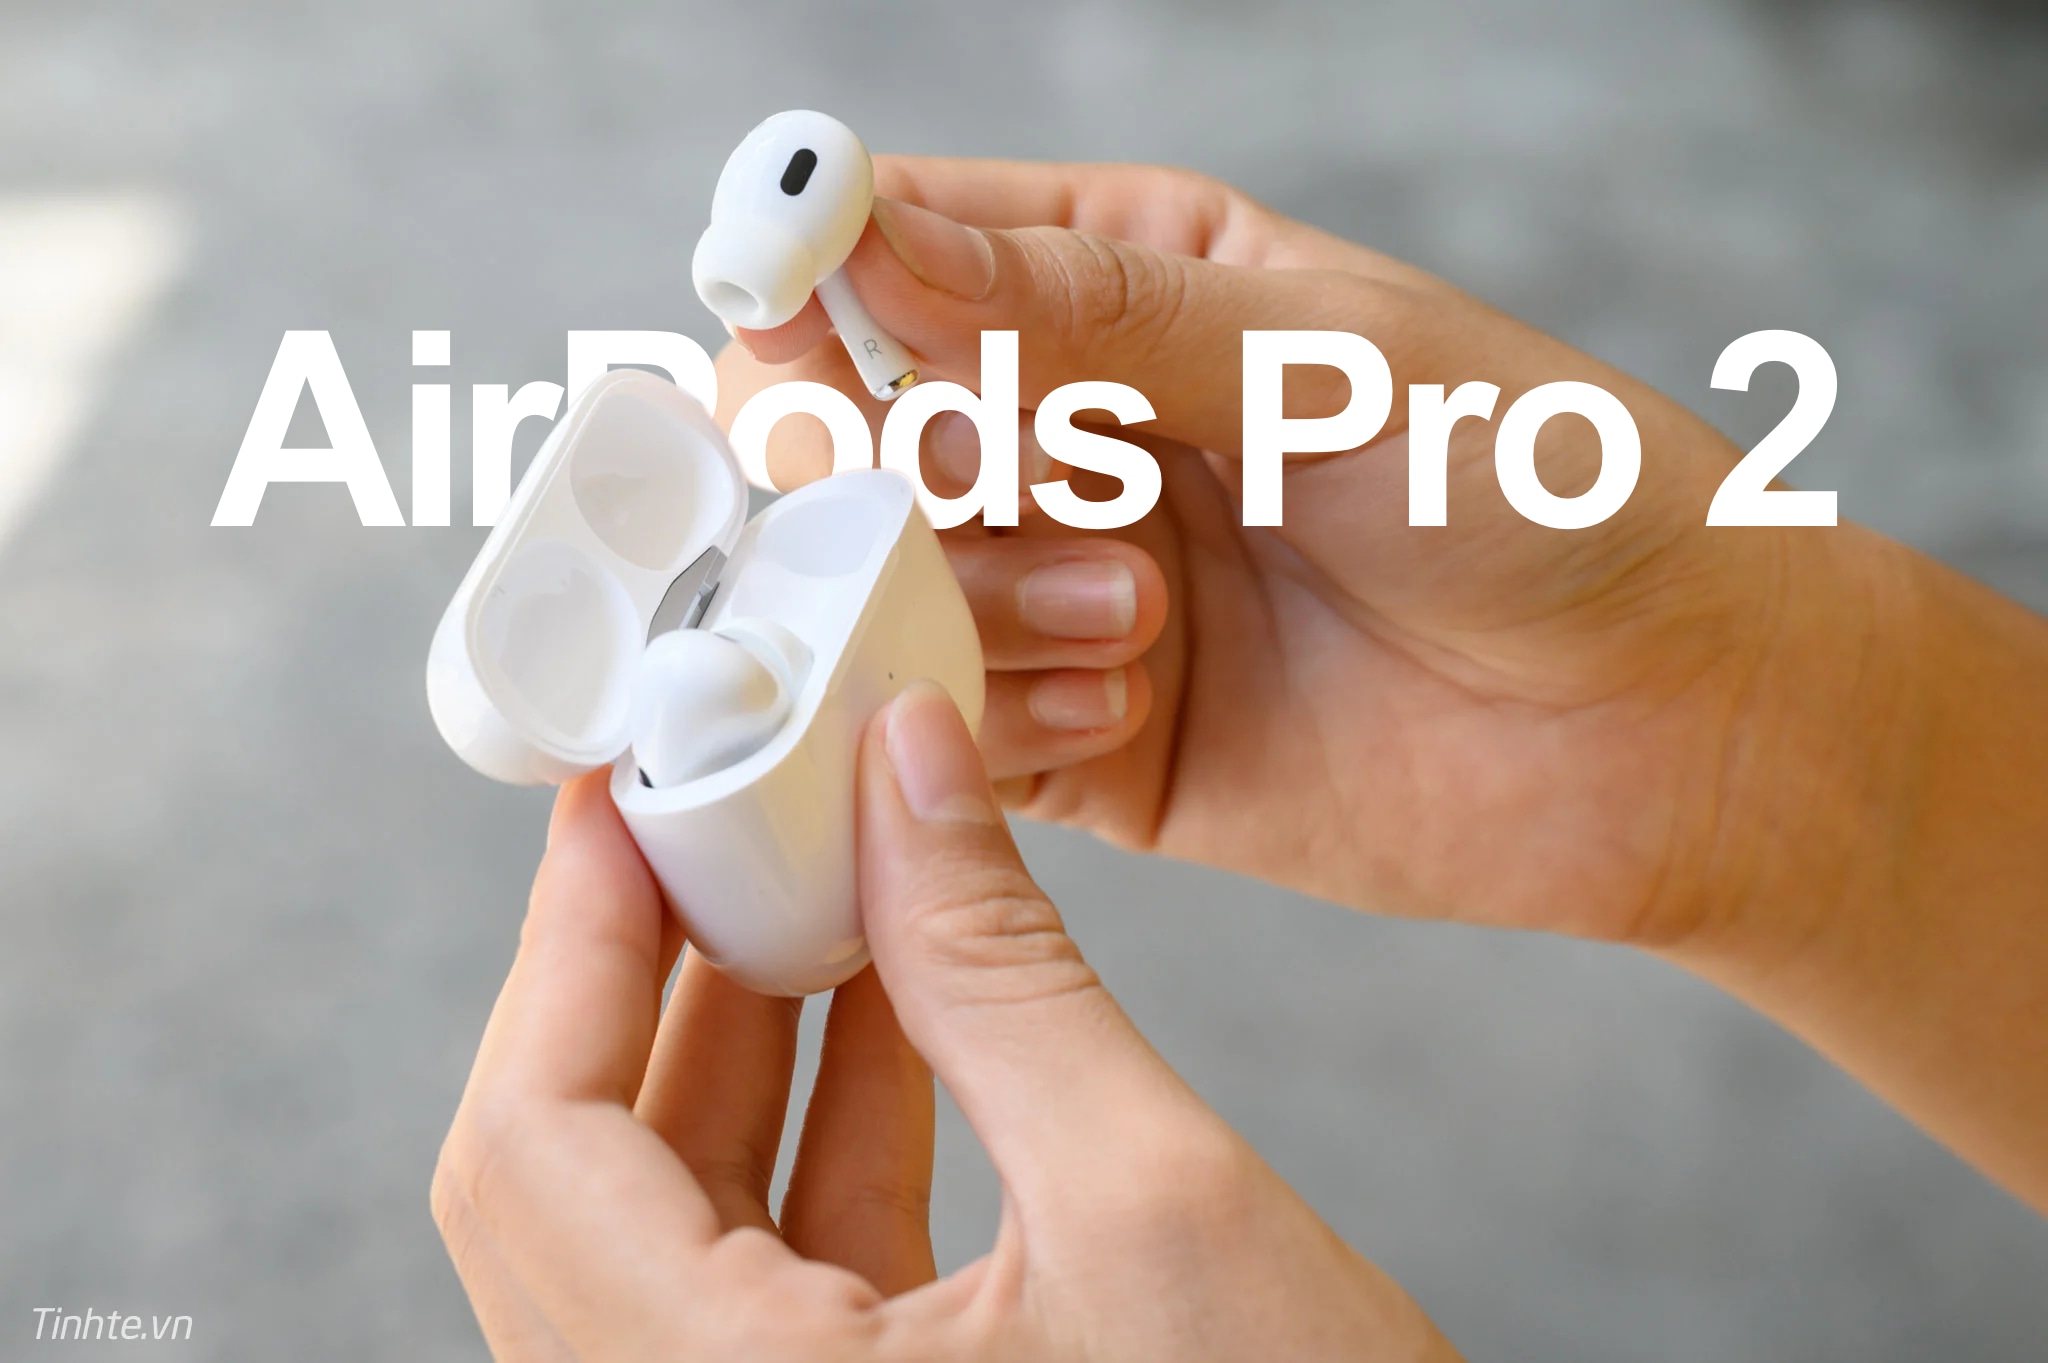 Cuối năm nay, AirPods Pro sẽ được cập nhật những tính năng này